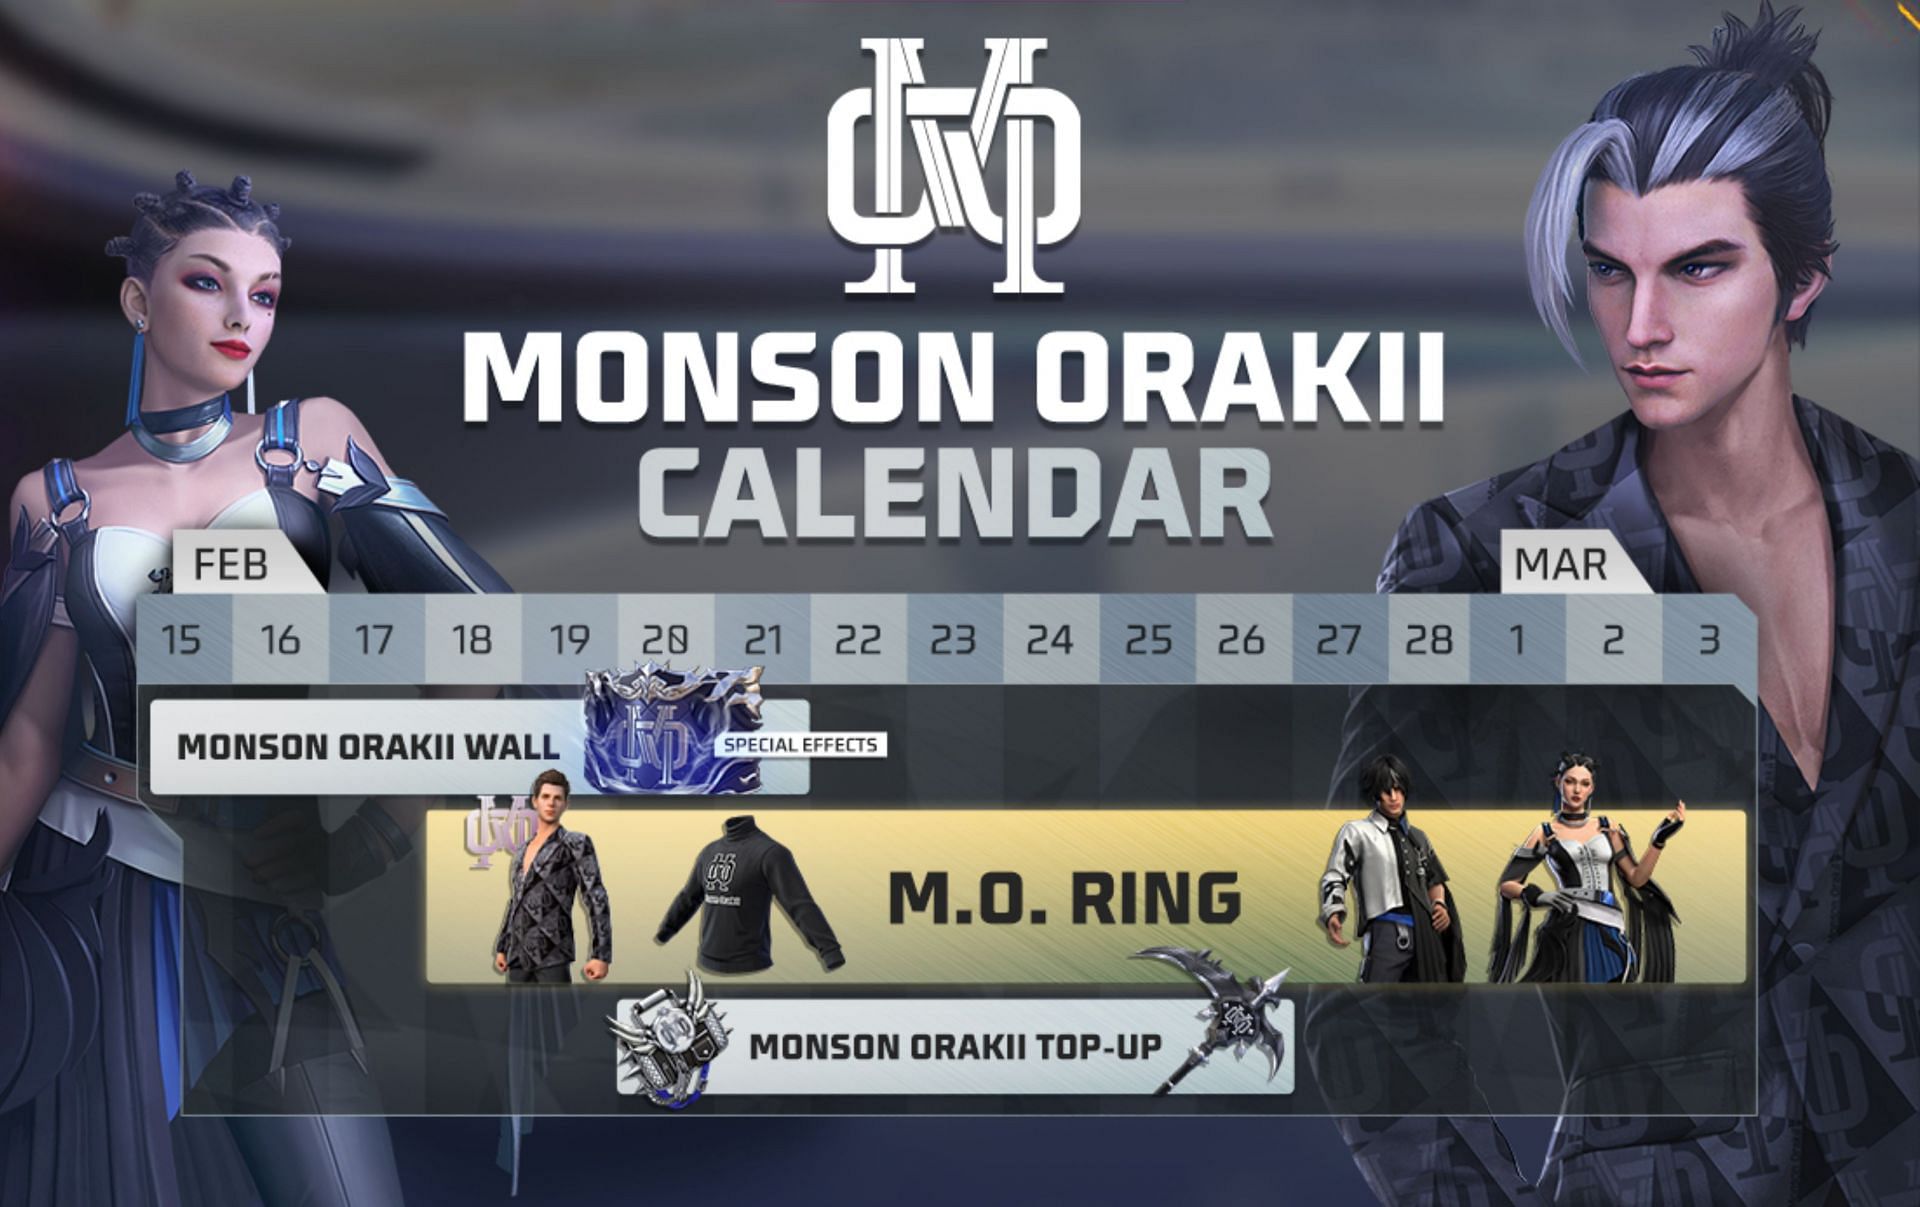 Monson Orakii calendar provides an overview (Image via Garena)